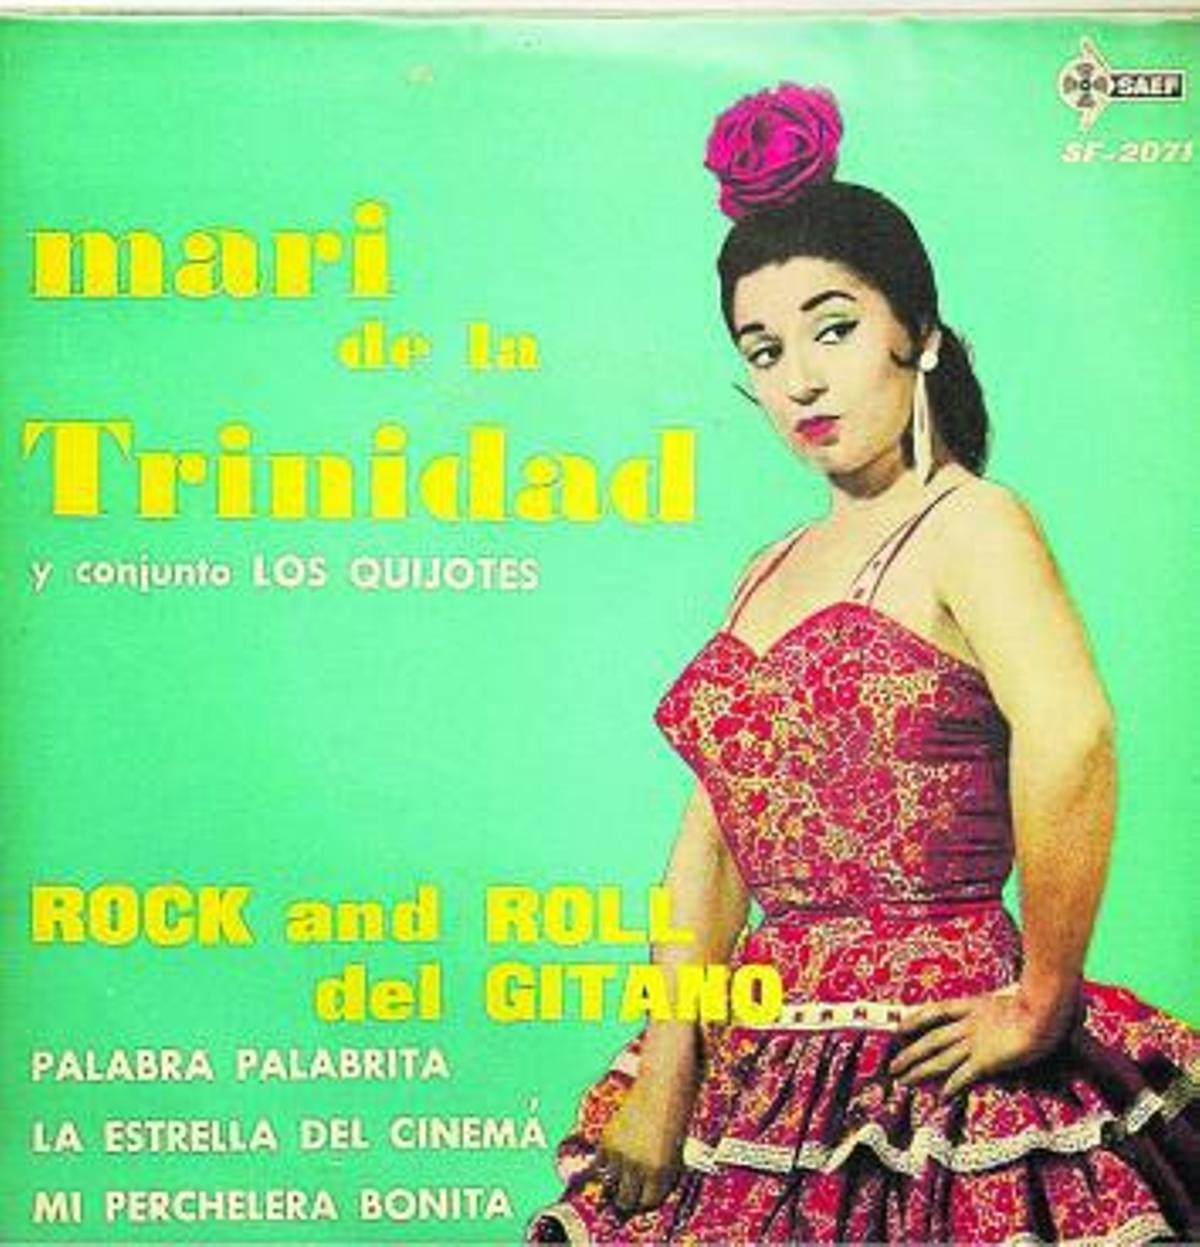 Carátula del disco de Mari de La Trinidad.